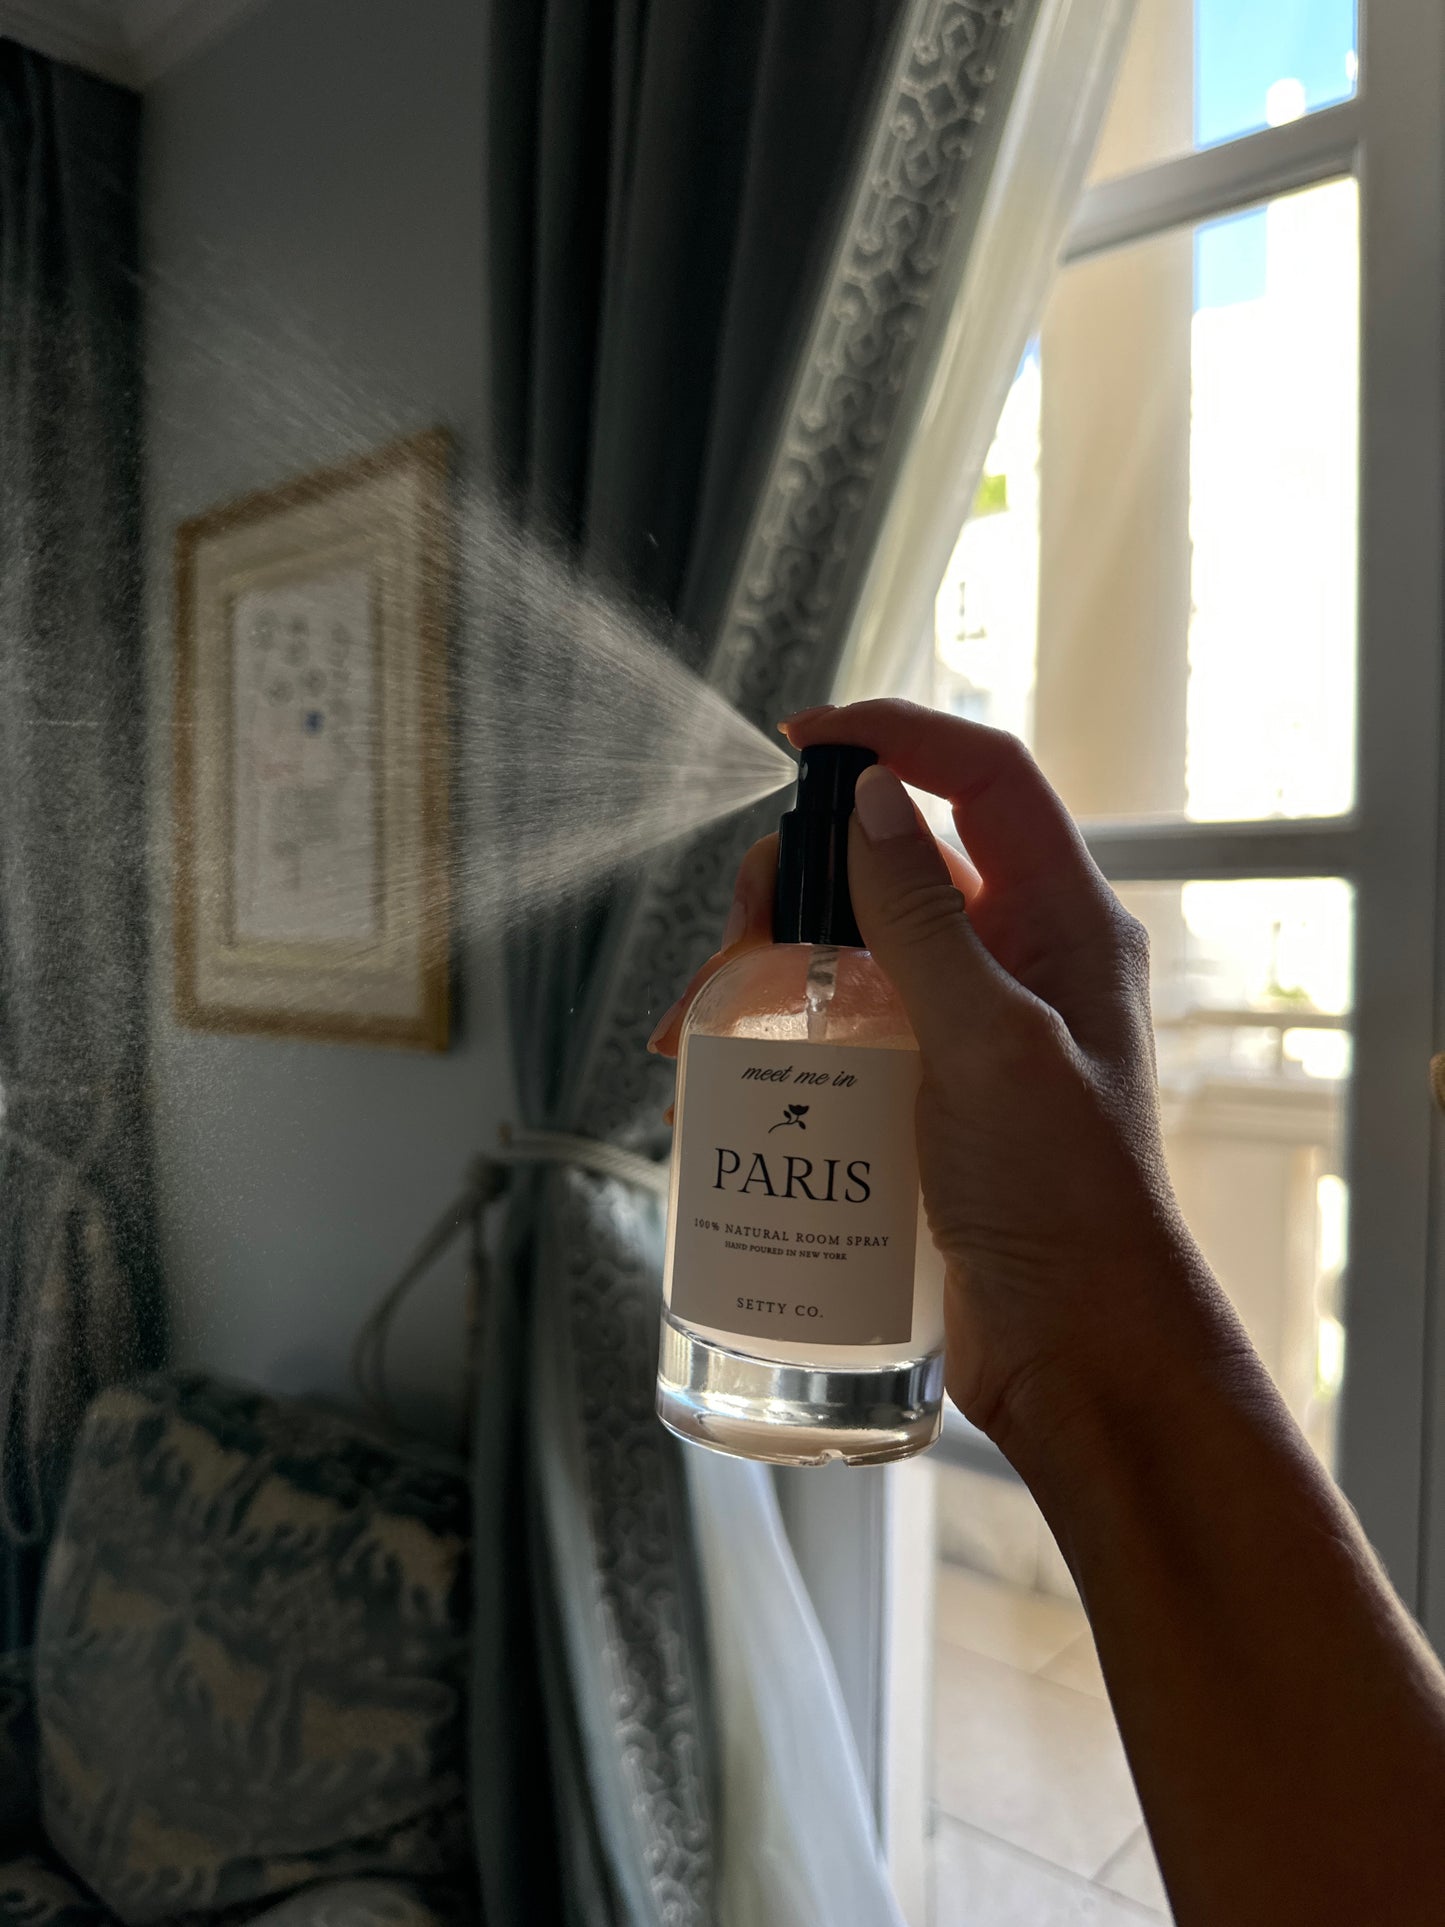 Meet Me in Paris Room Spray